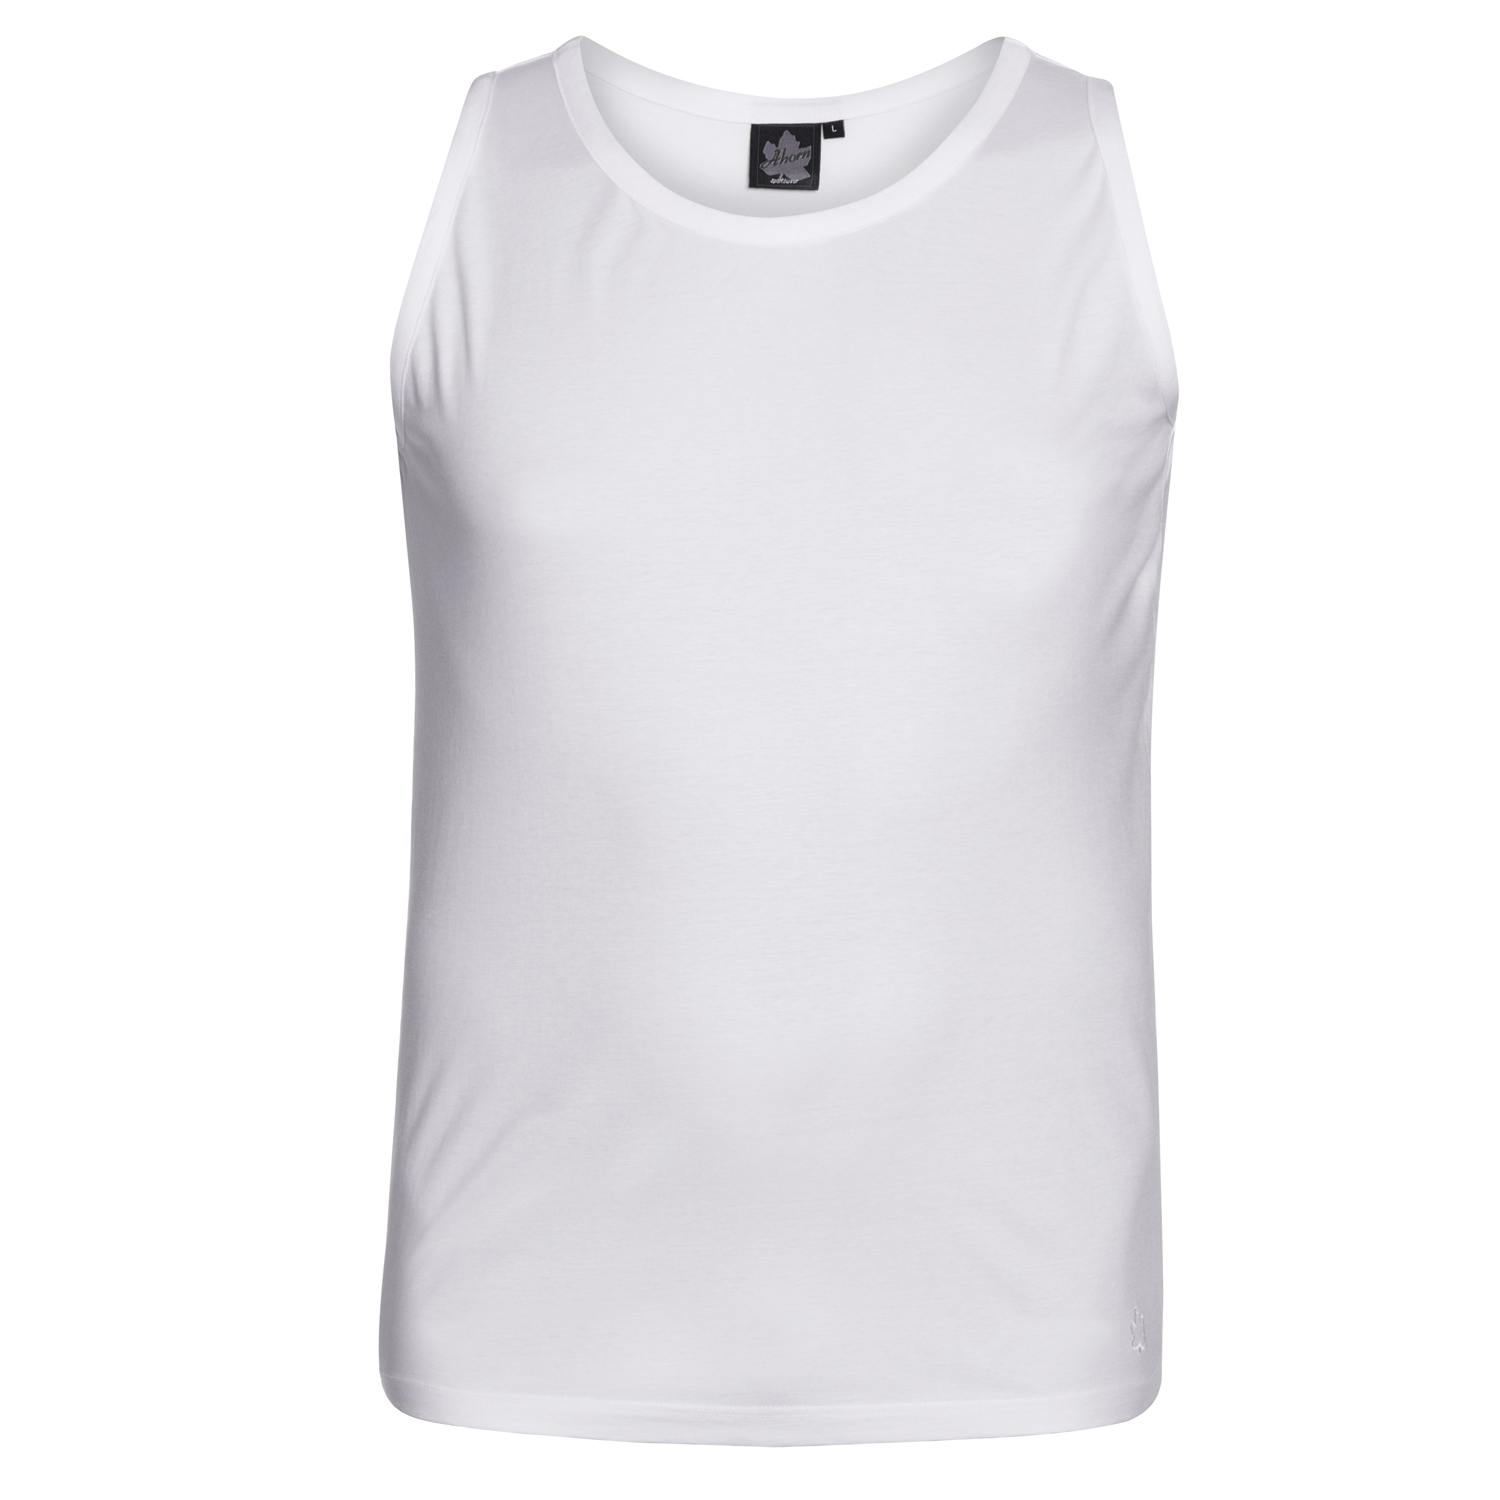 Shirt sans manches en blanc by Ahorn Sportswear en grandes tailles 2XL - 10XL